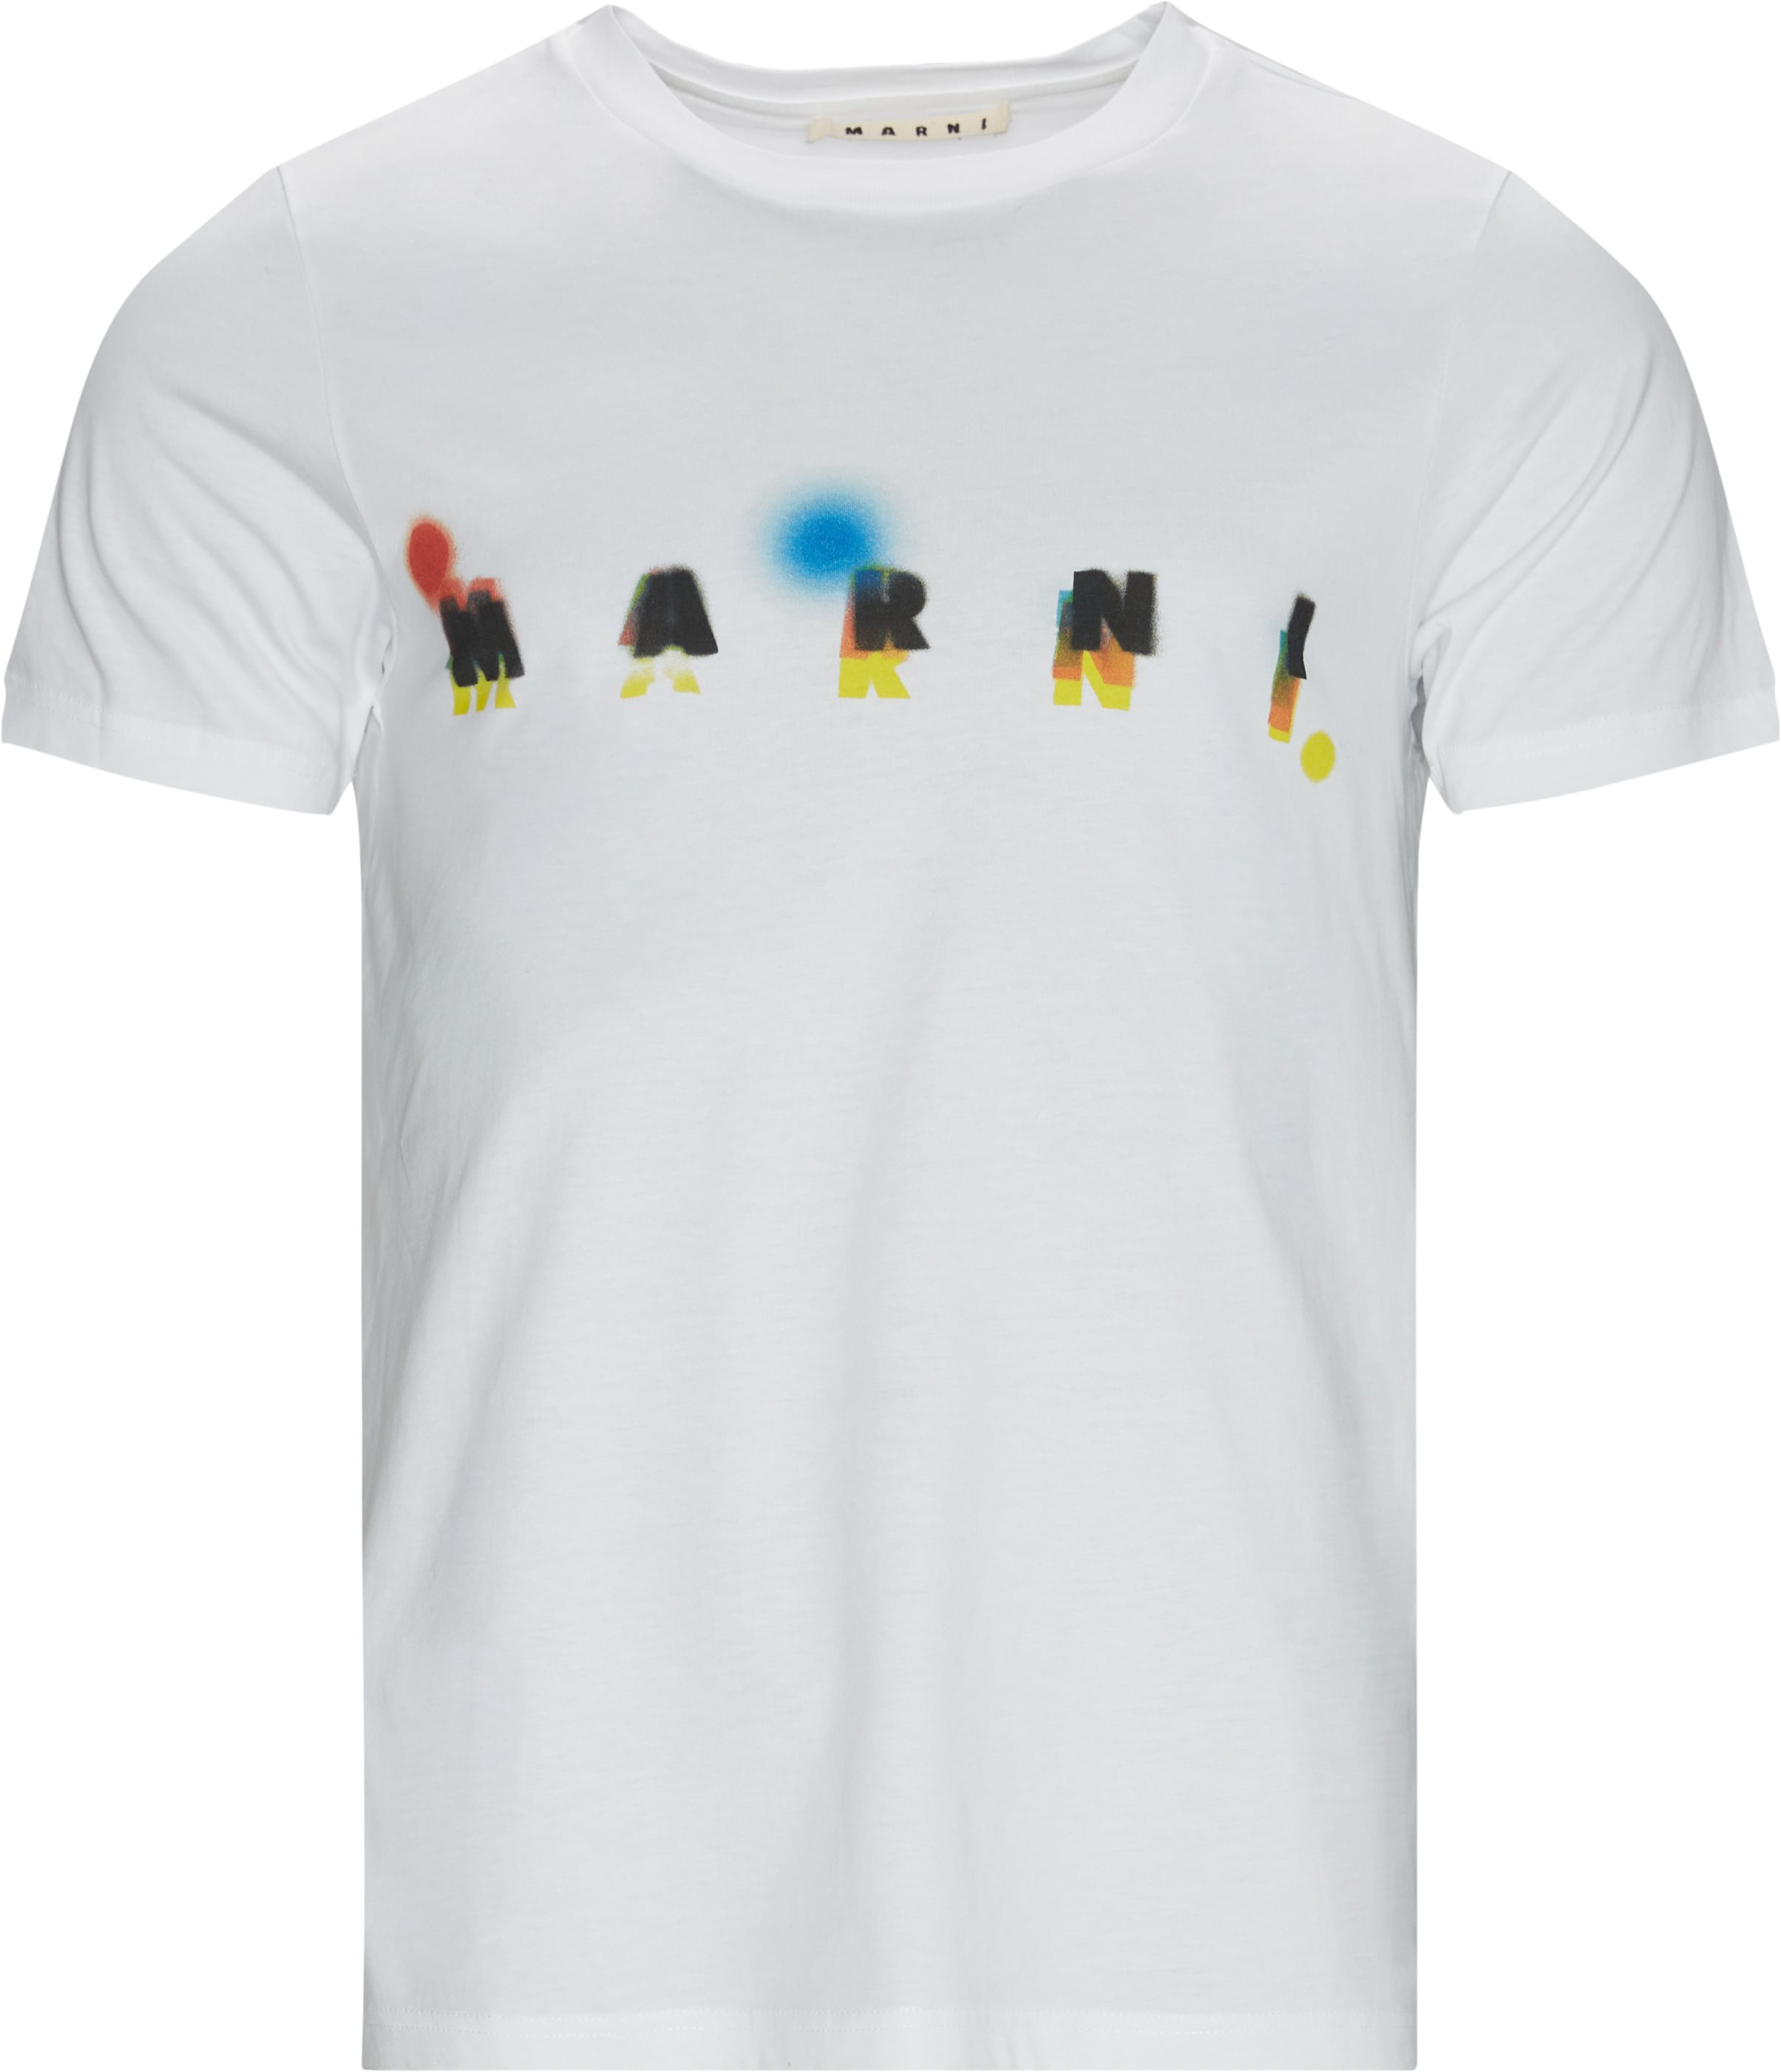 Marni T-shirts HUMU0170PO UTCZ57 White